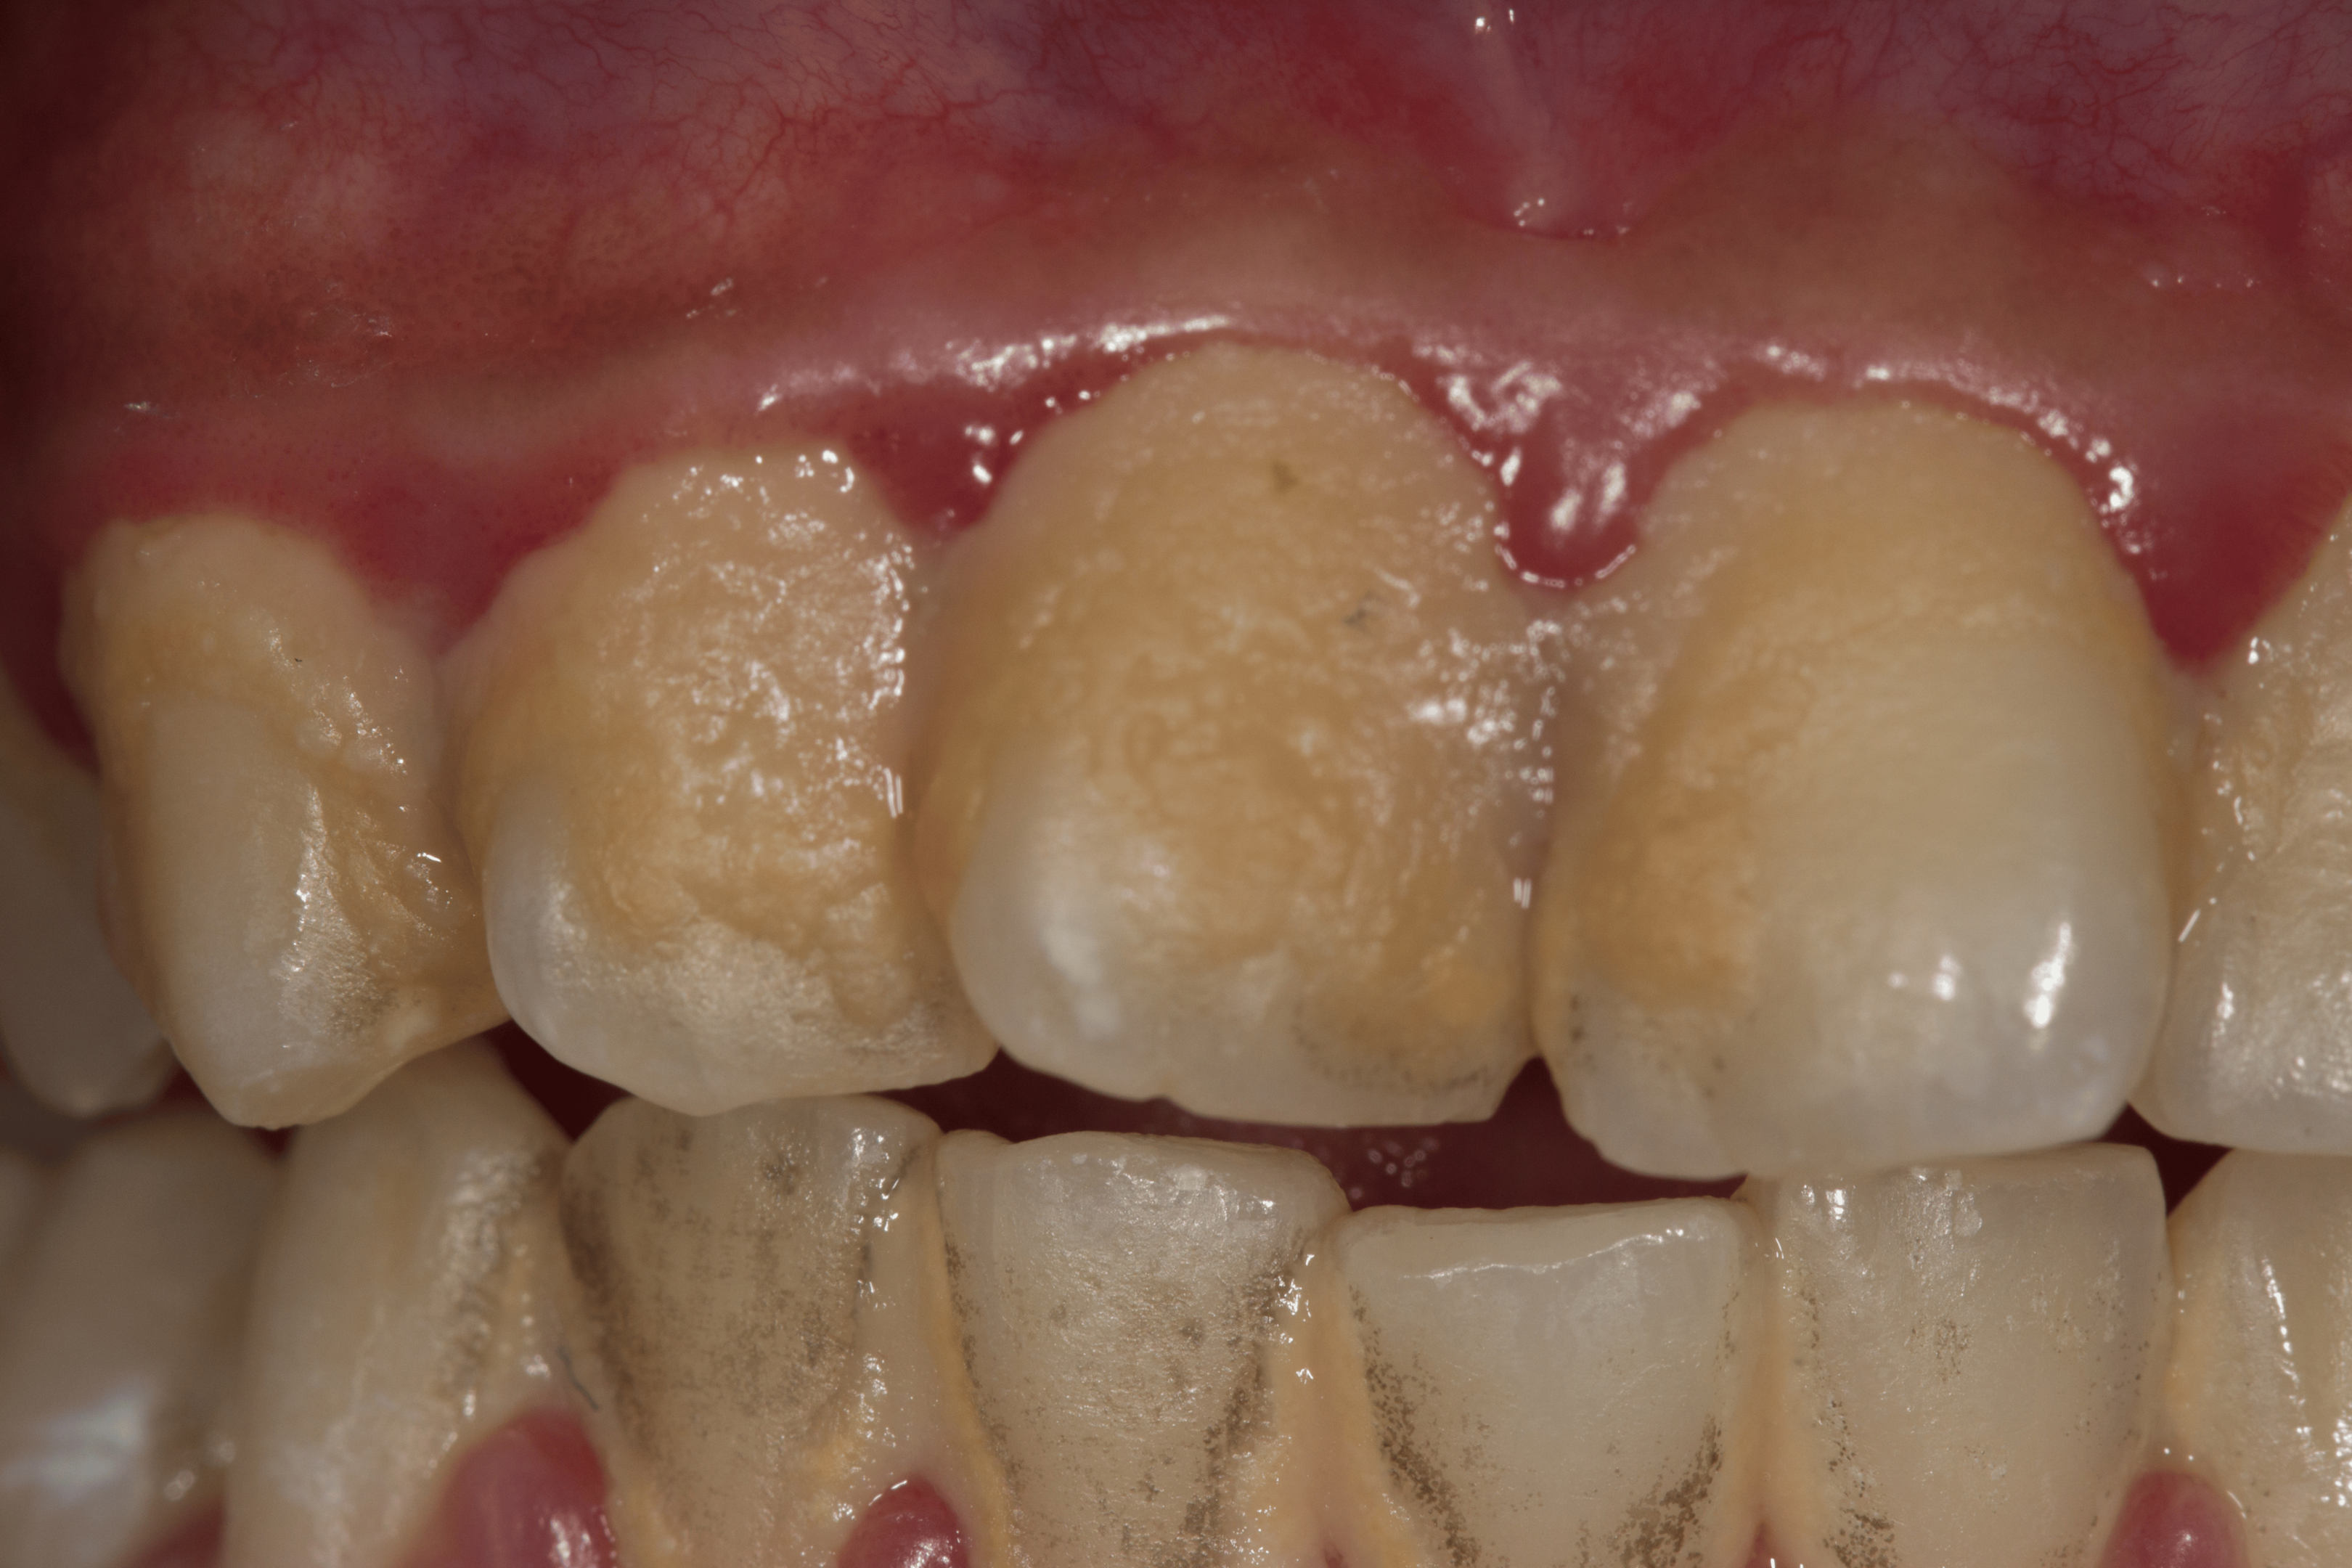 Tannkjøttsykdom starter oftest med oppbygning av plakk og tannstein